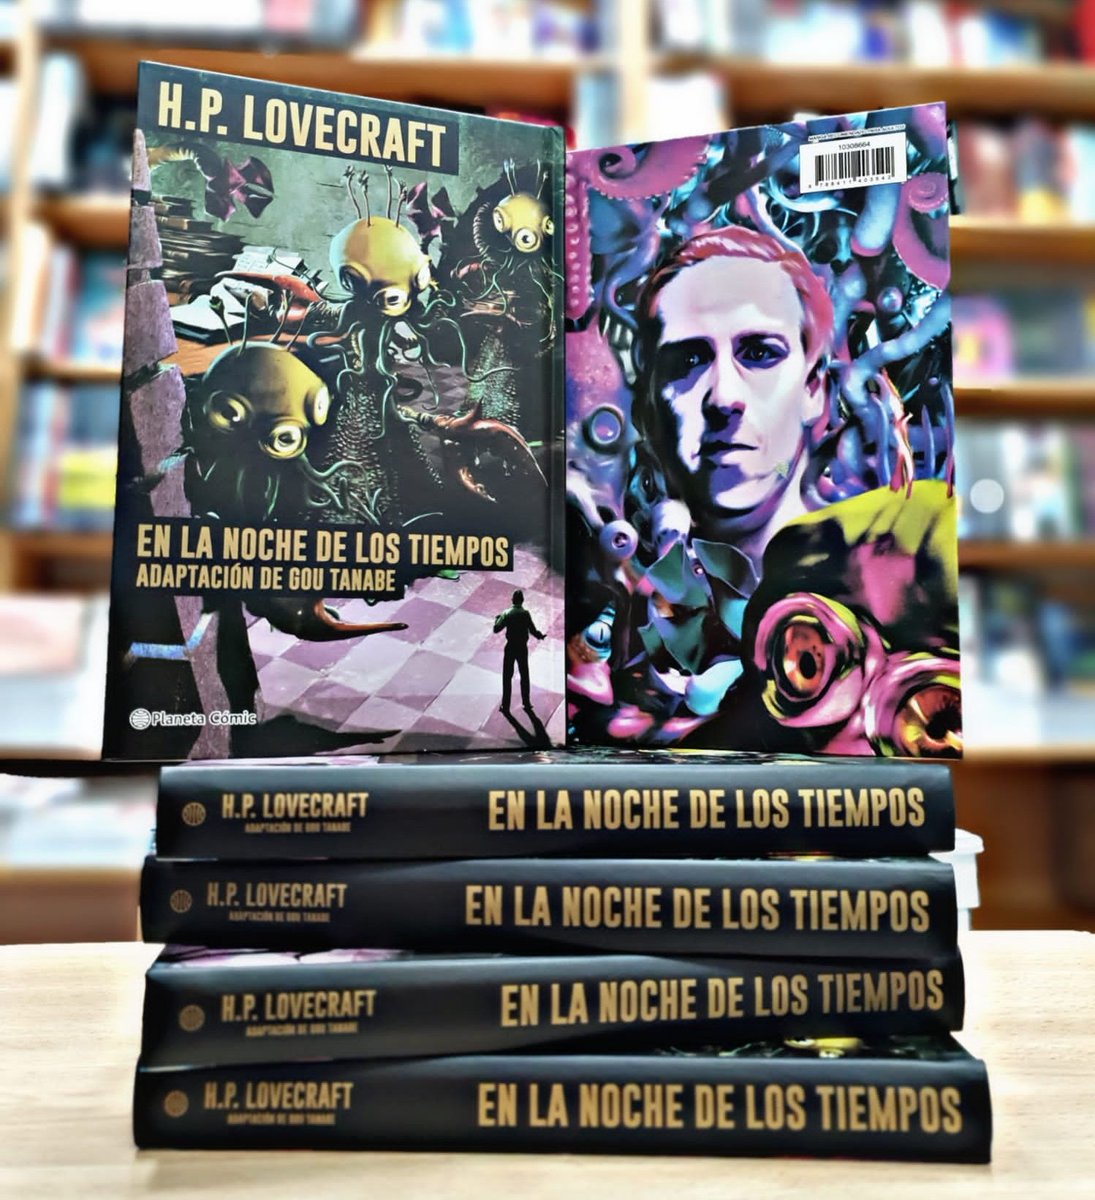 Los viajes al mundo de #Lovecraft de la mano de Gou Tanabe son increibles....una nueva entrega En la noche de los tiempos. Disfruta de la colección completa en nuestra librería. #comics #novelagrafica @PlanetadComic 💬